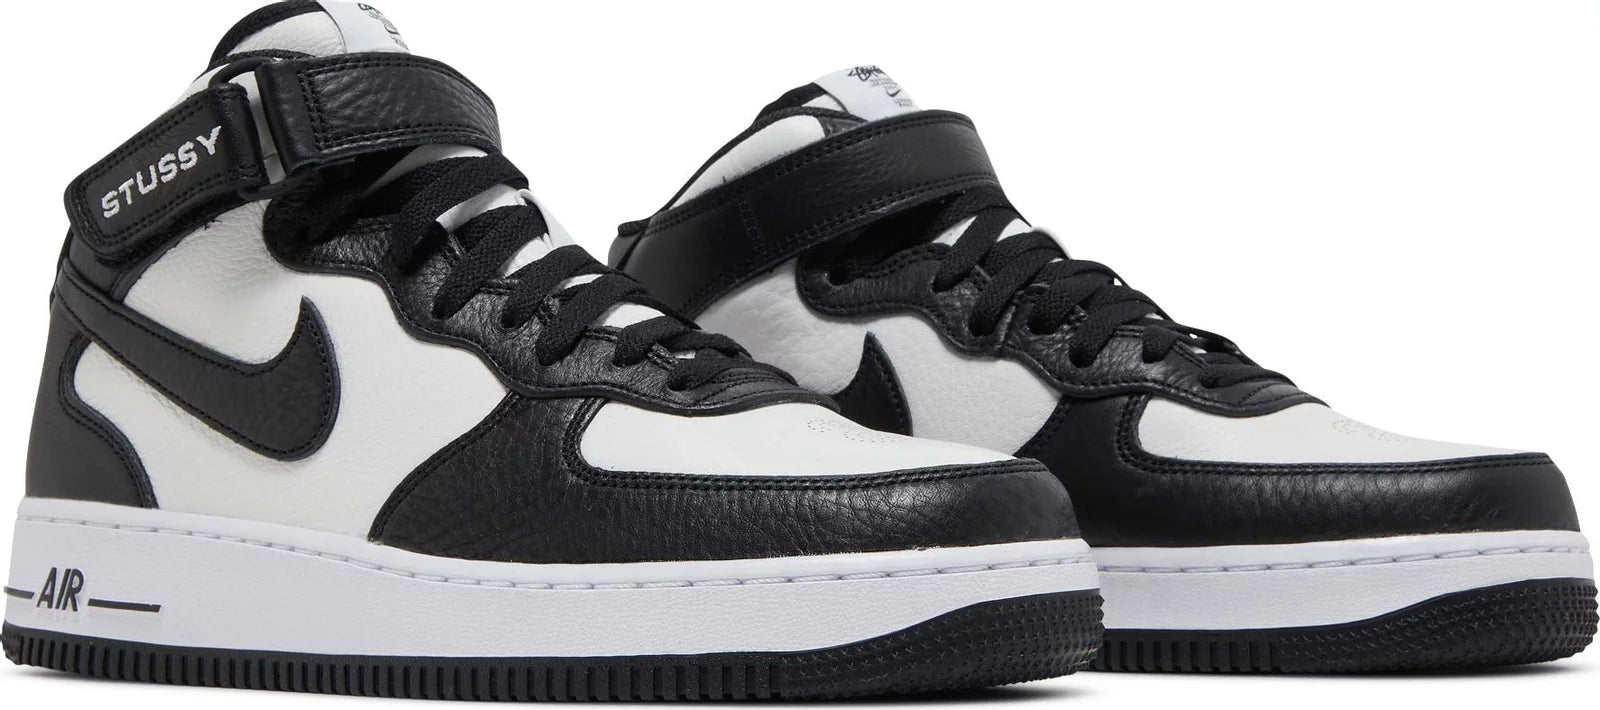 Nike Air Force 1 Mid Stussy Grey Black - Sneakersbe Sneakers Sale Online